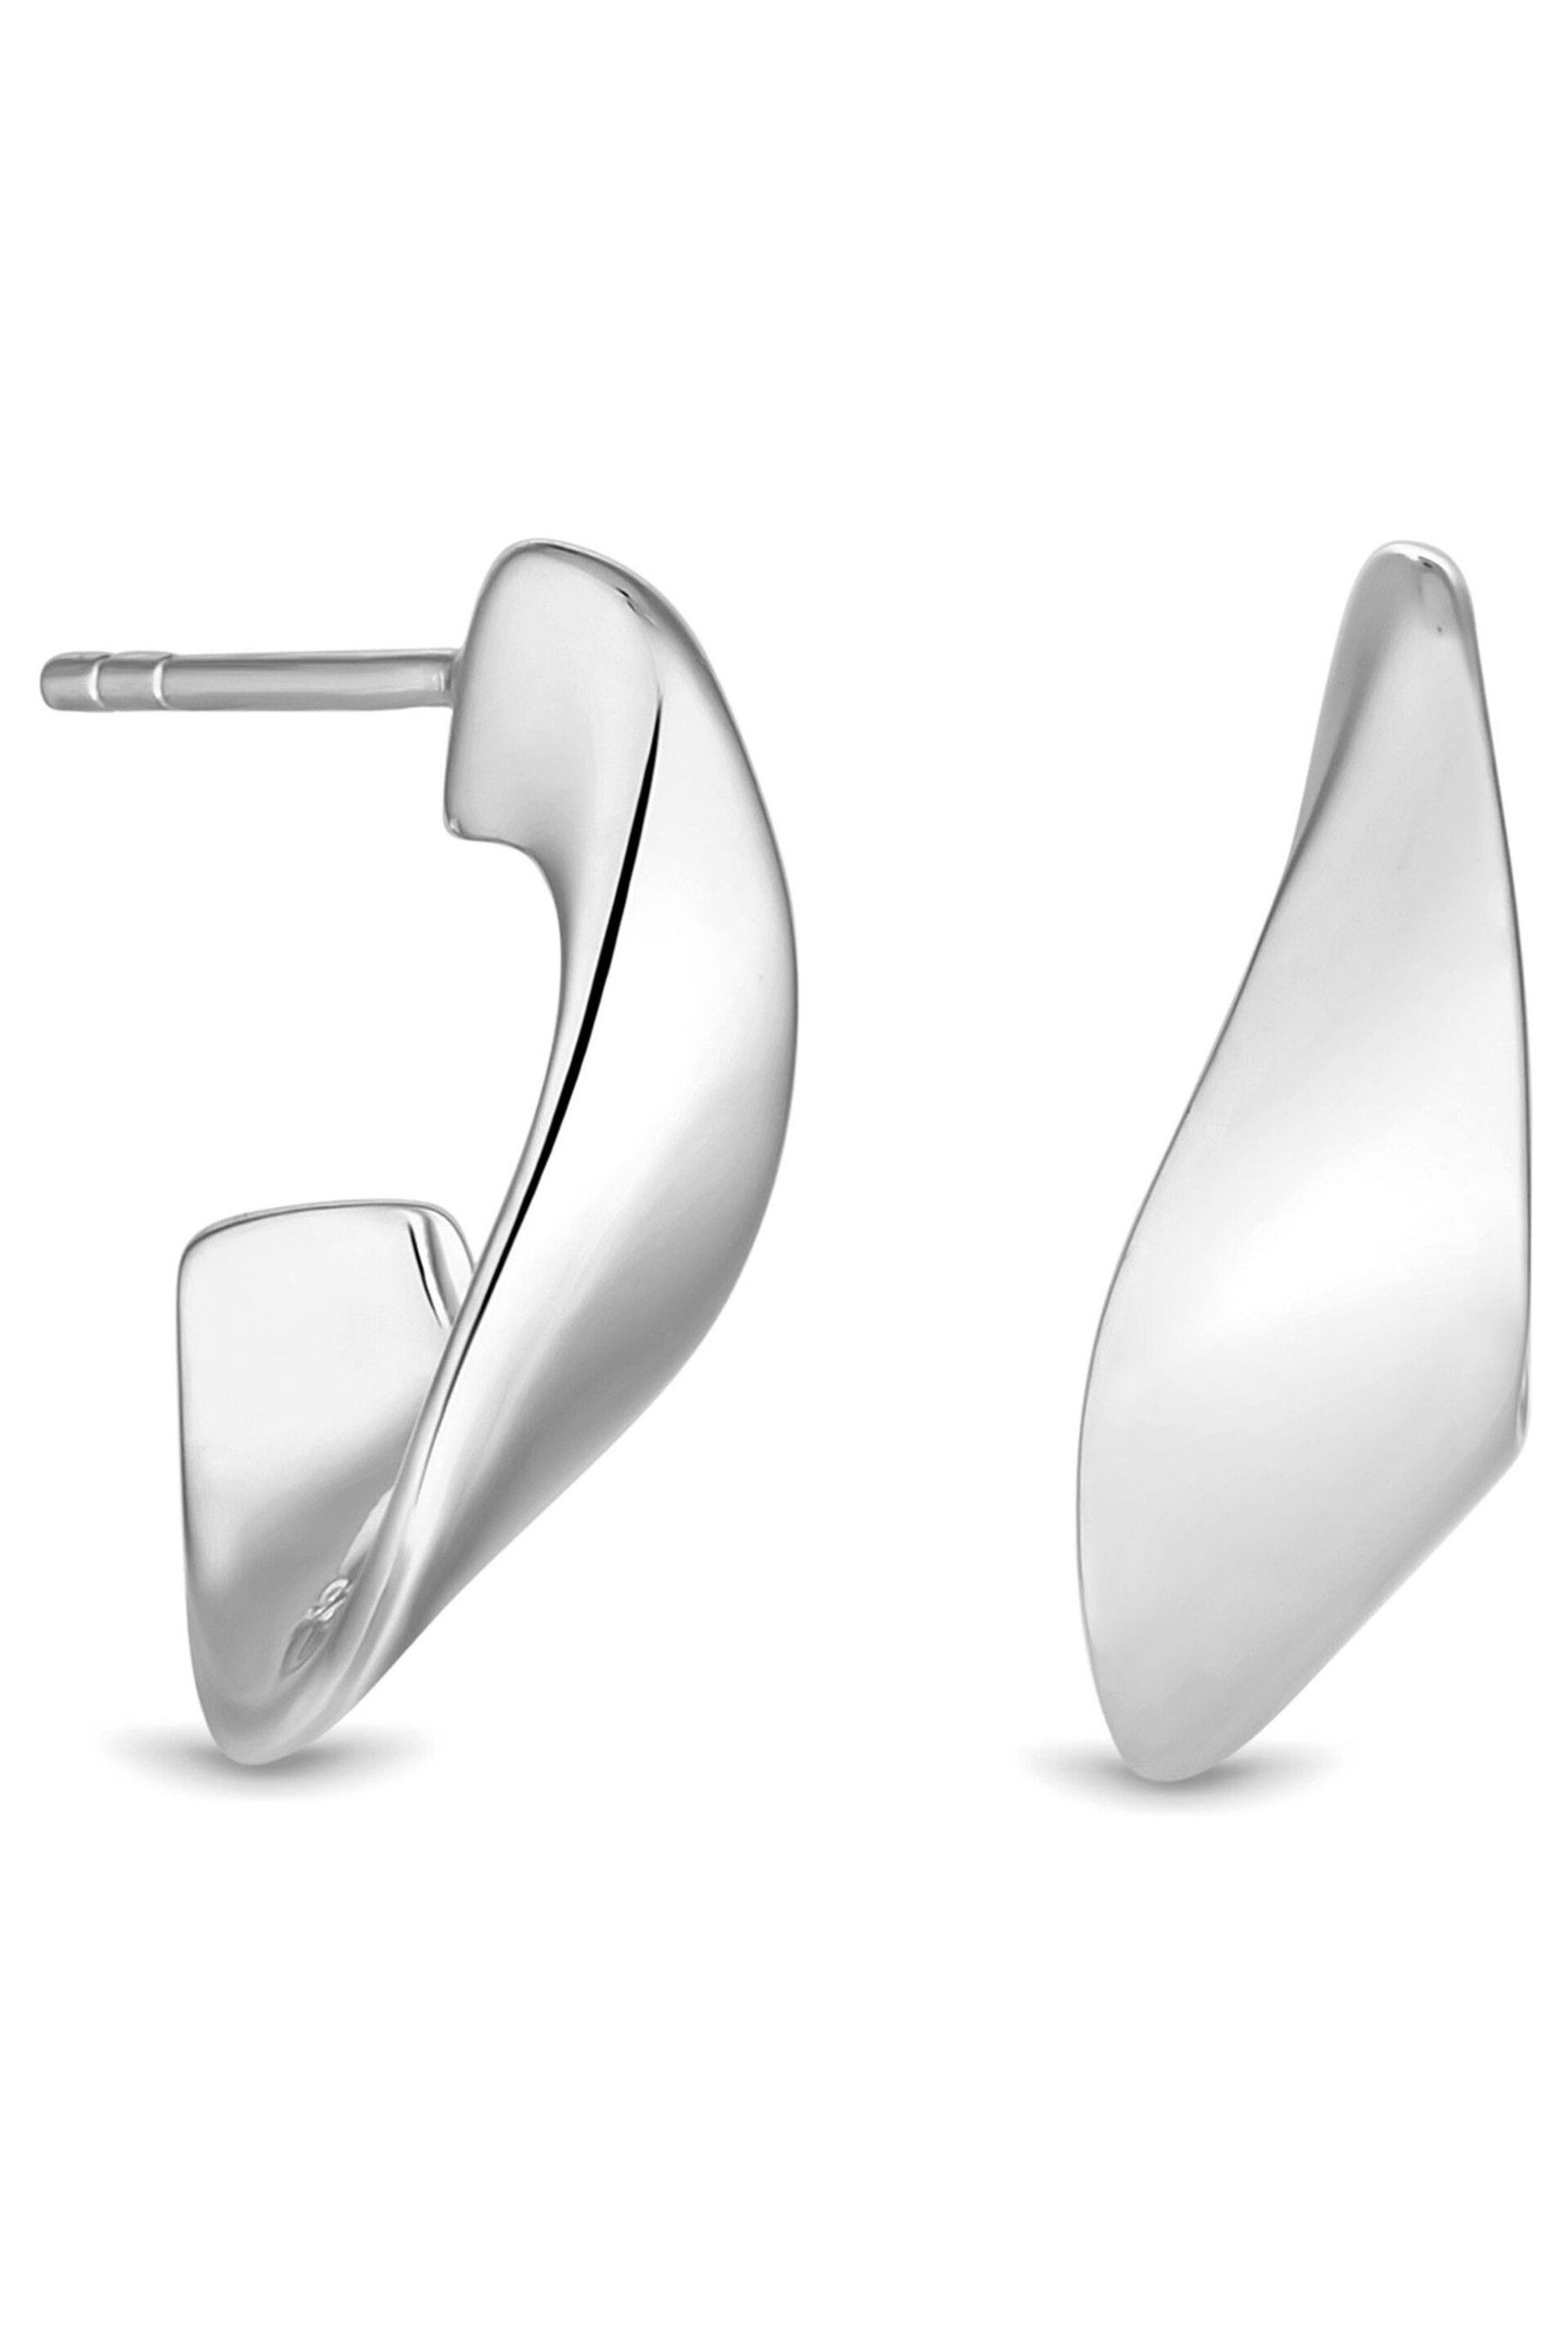 Simply Silver Sterling Silver 925 Clean Polished Twist Hoop Earrings - Image 2 of 3